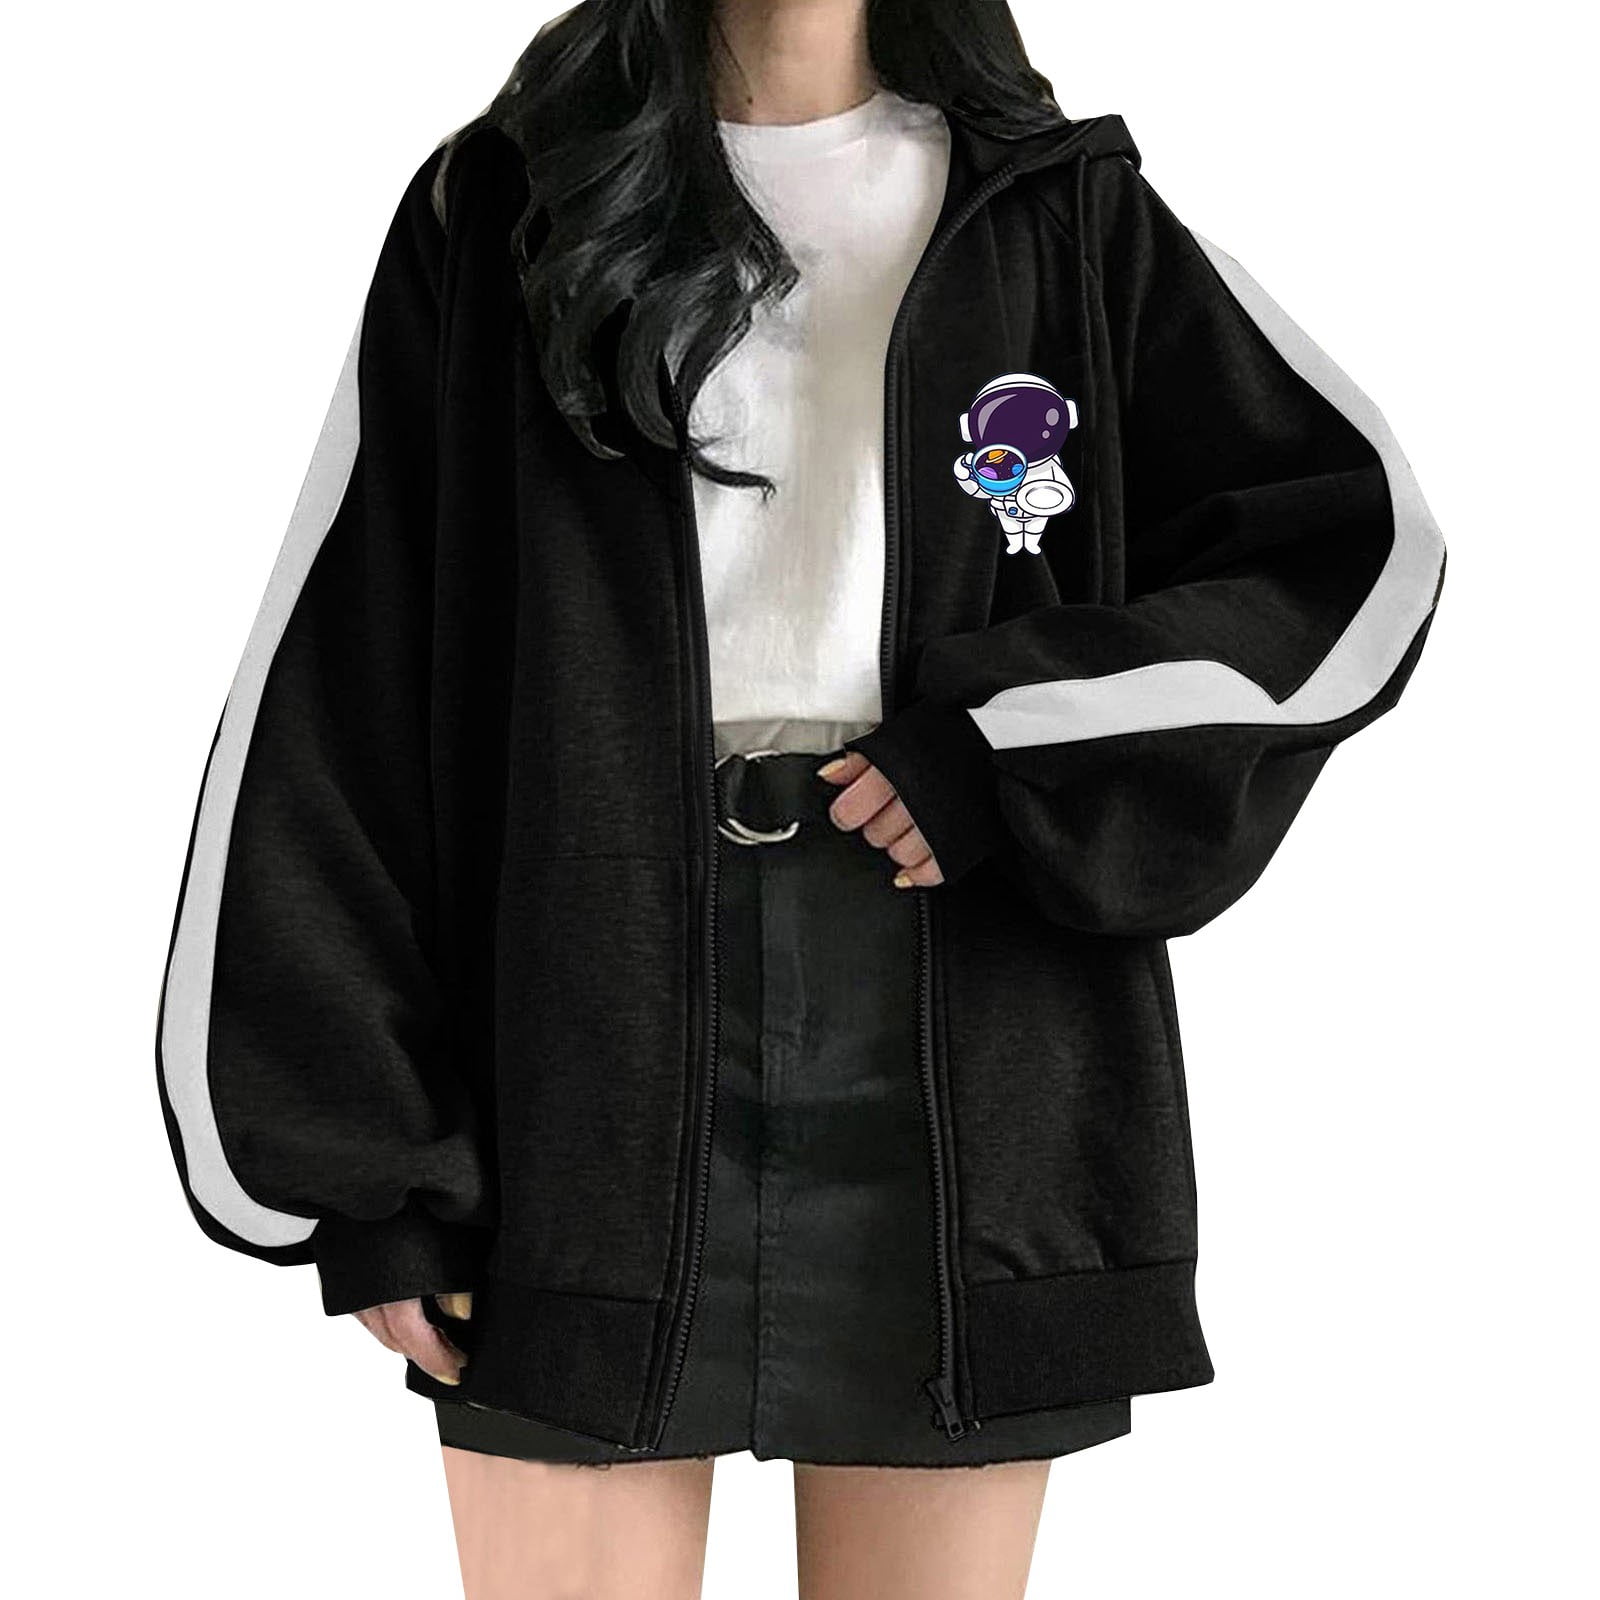 HSMQHJWE Womens Black Zip Up Jacket Short Sleeve Jacket Ladies